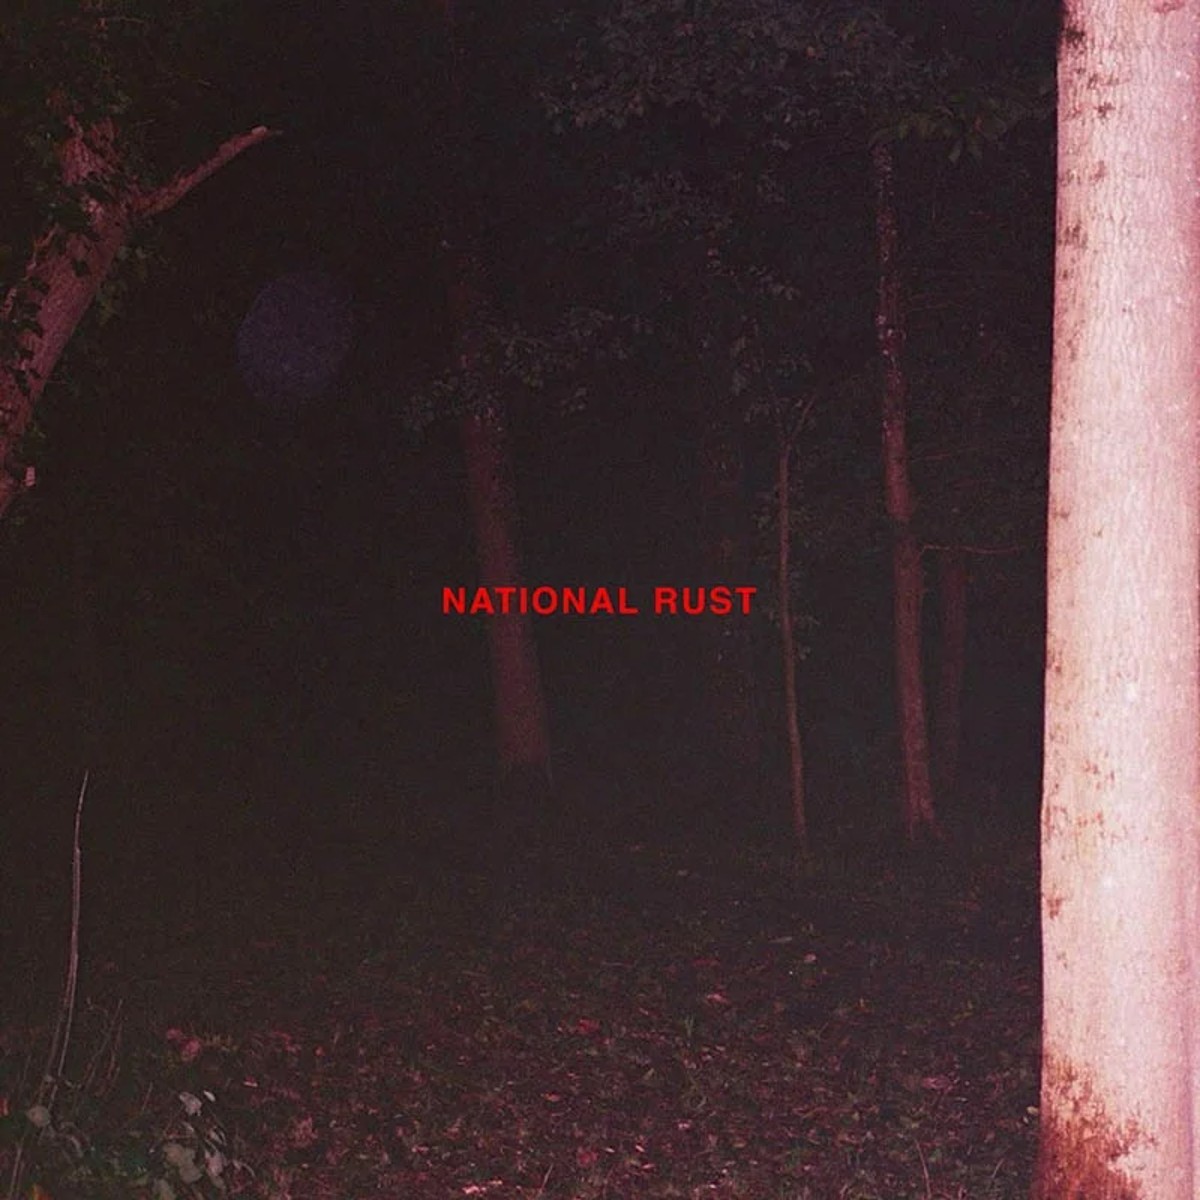 Buzzard Buzzard Buzzard “National Rust” single artwork